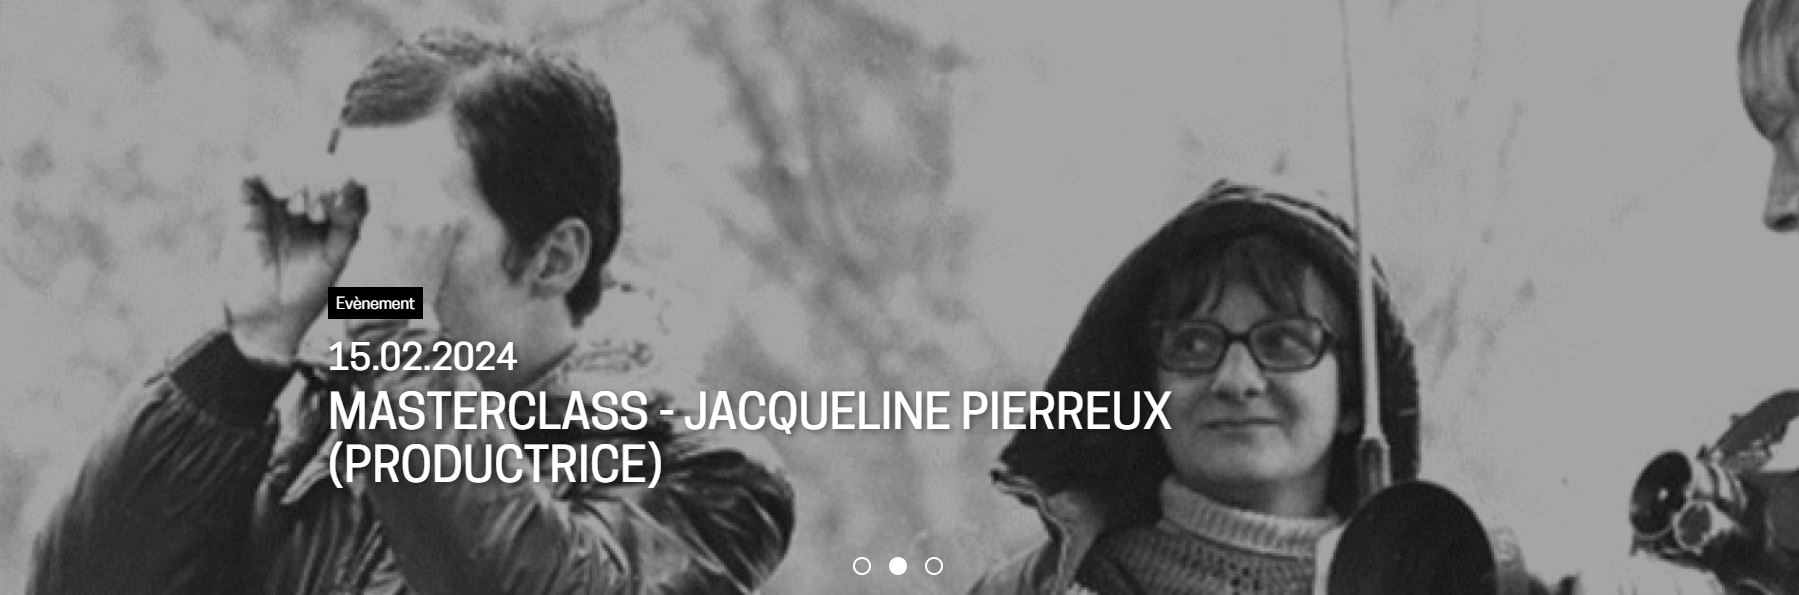 Masterclass - Jacqueline Pierreux, productrice